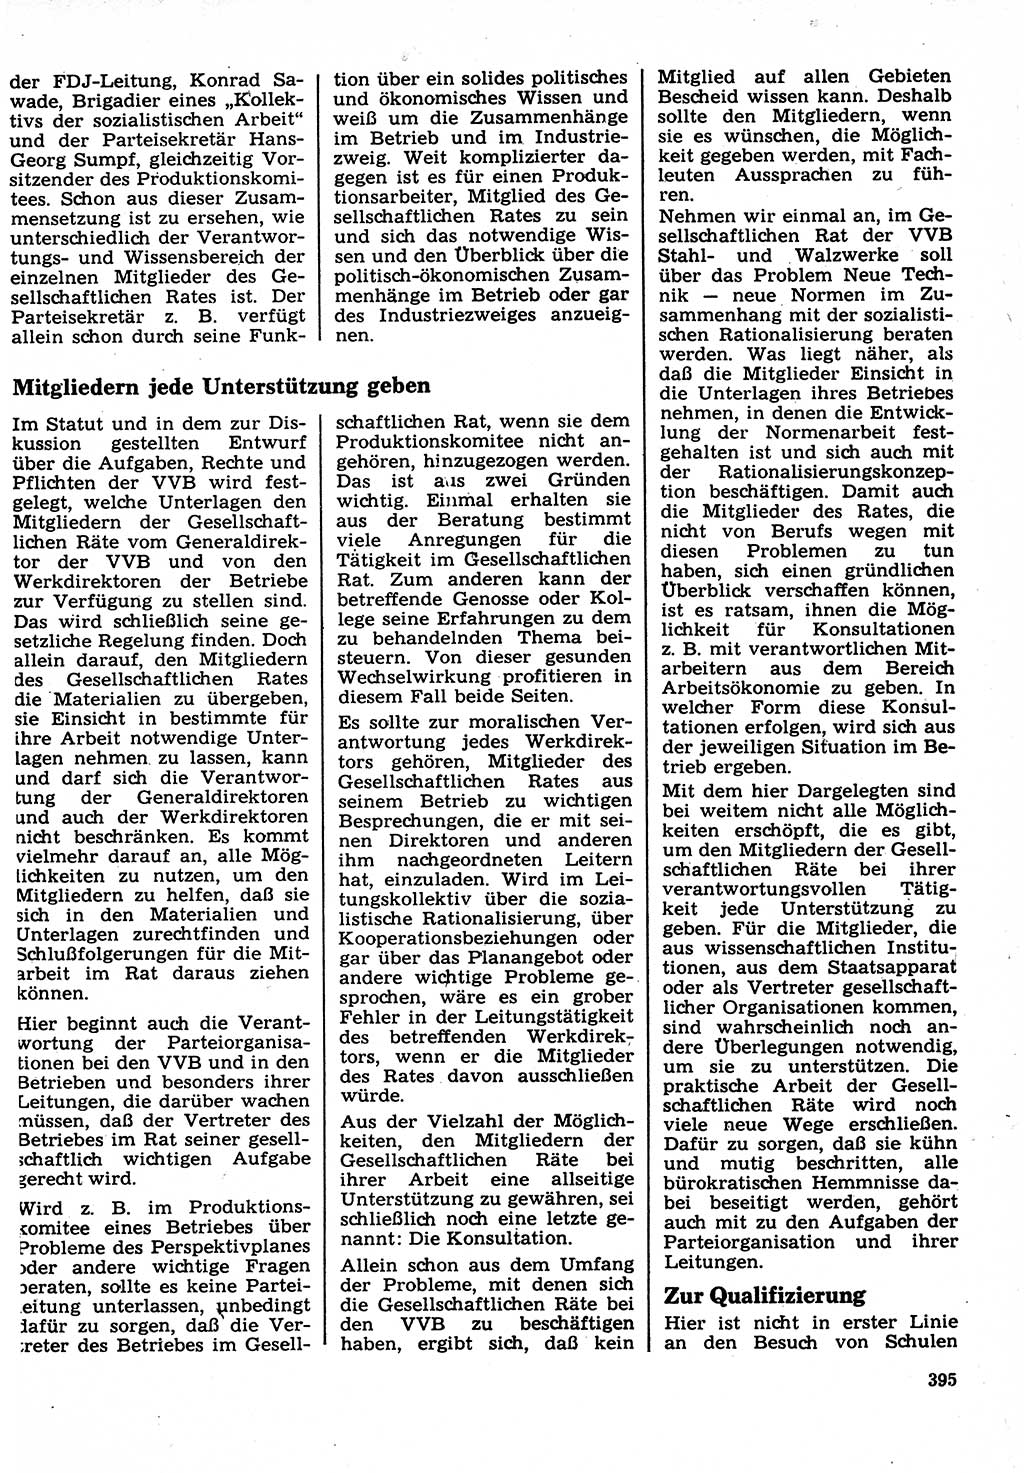 Neuer Weg (NW), Organ des Zentralkomitees (ZK) der SED (Sozialistische Einheitspartei Deutschlands) für Fragen des Parteilebens, 22. Jahrgang [Deutsche Demokratische Republik (DDR)] 1967, Seite 395 (NW ZK SED DDR 1967, S. 395)